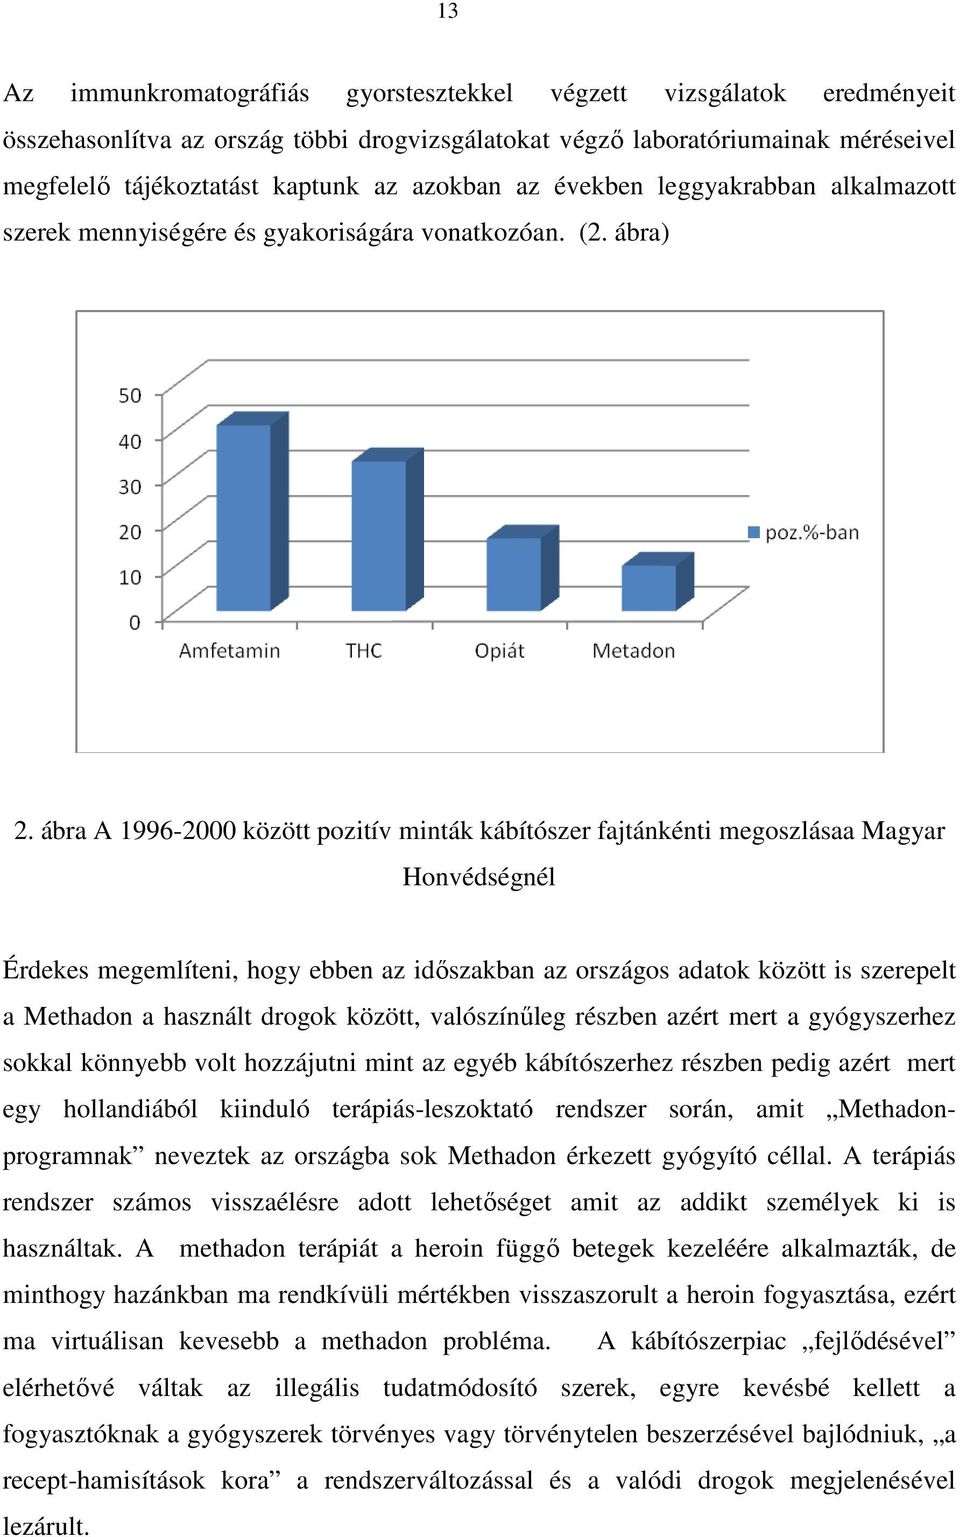 ábra A 1996-2000 között pozitív minták kábítószer fajtánkénti megoszlásaa Magyar Honvédségnél Érdekes megemlíteni, hogy ebben az időszakban az országos adatok között is szerepelt a Methadon a